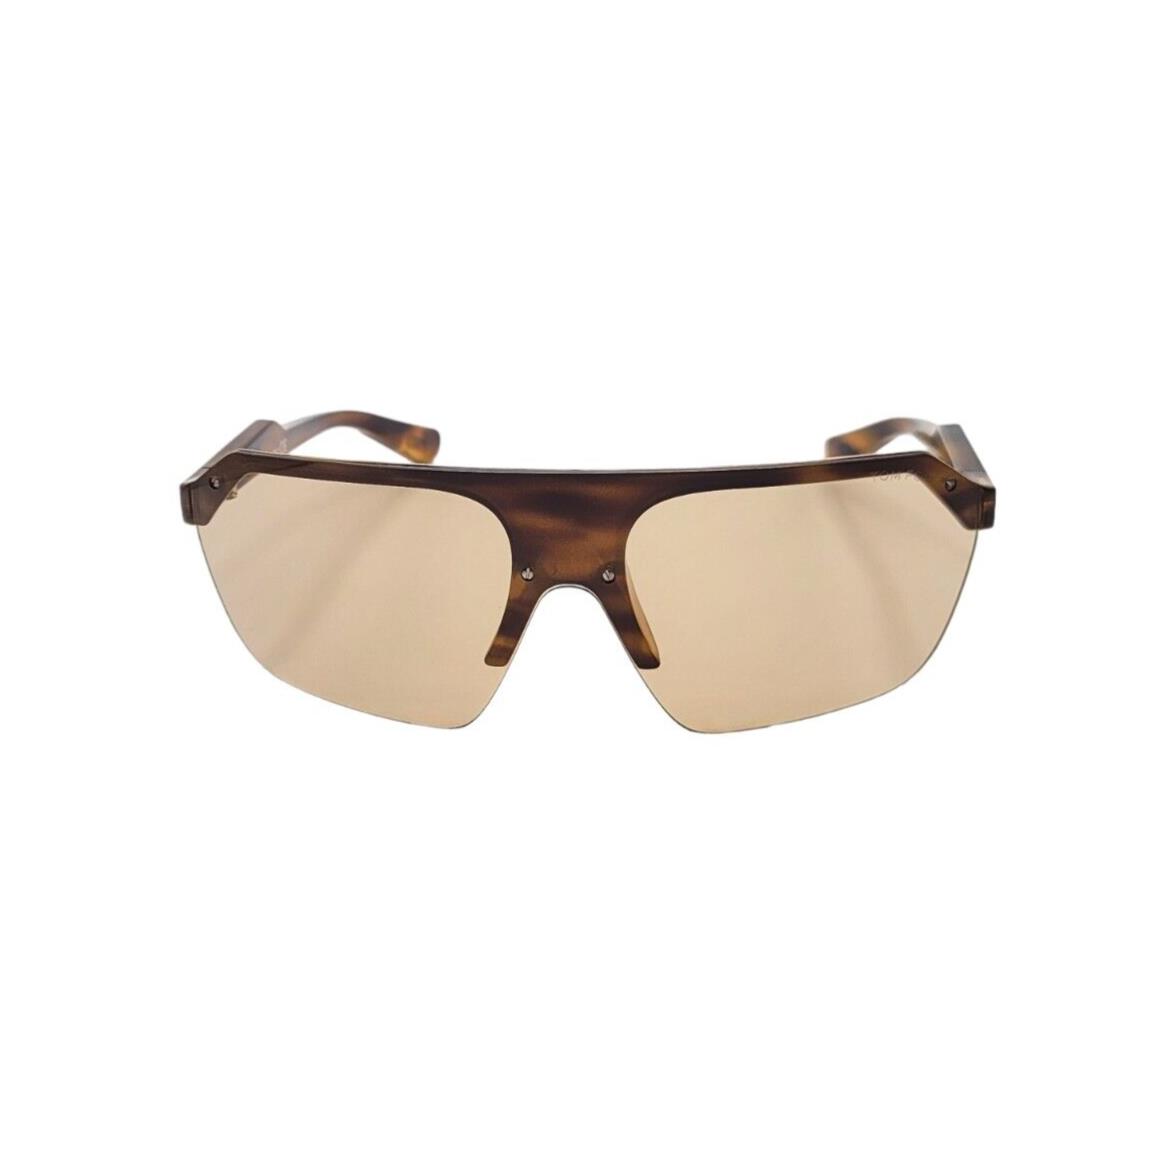 Tom Ford sunglasses Brenton - Clear , Havana Frame, Brown Lens 0